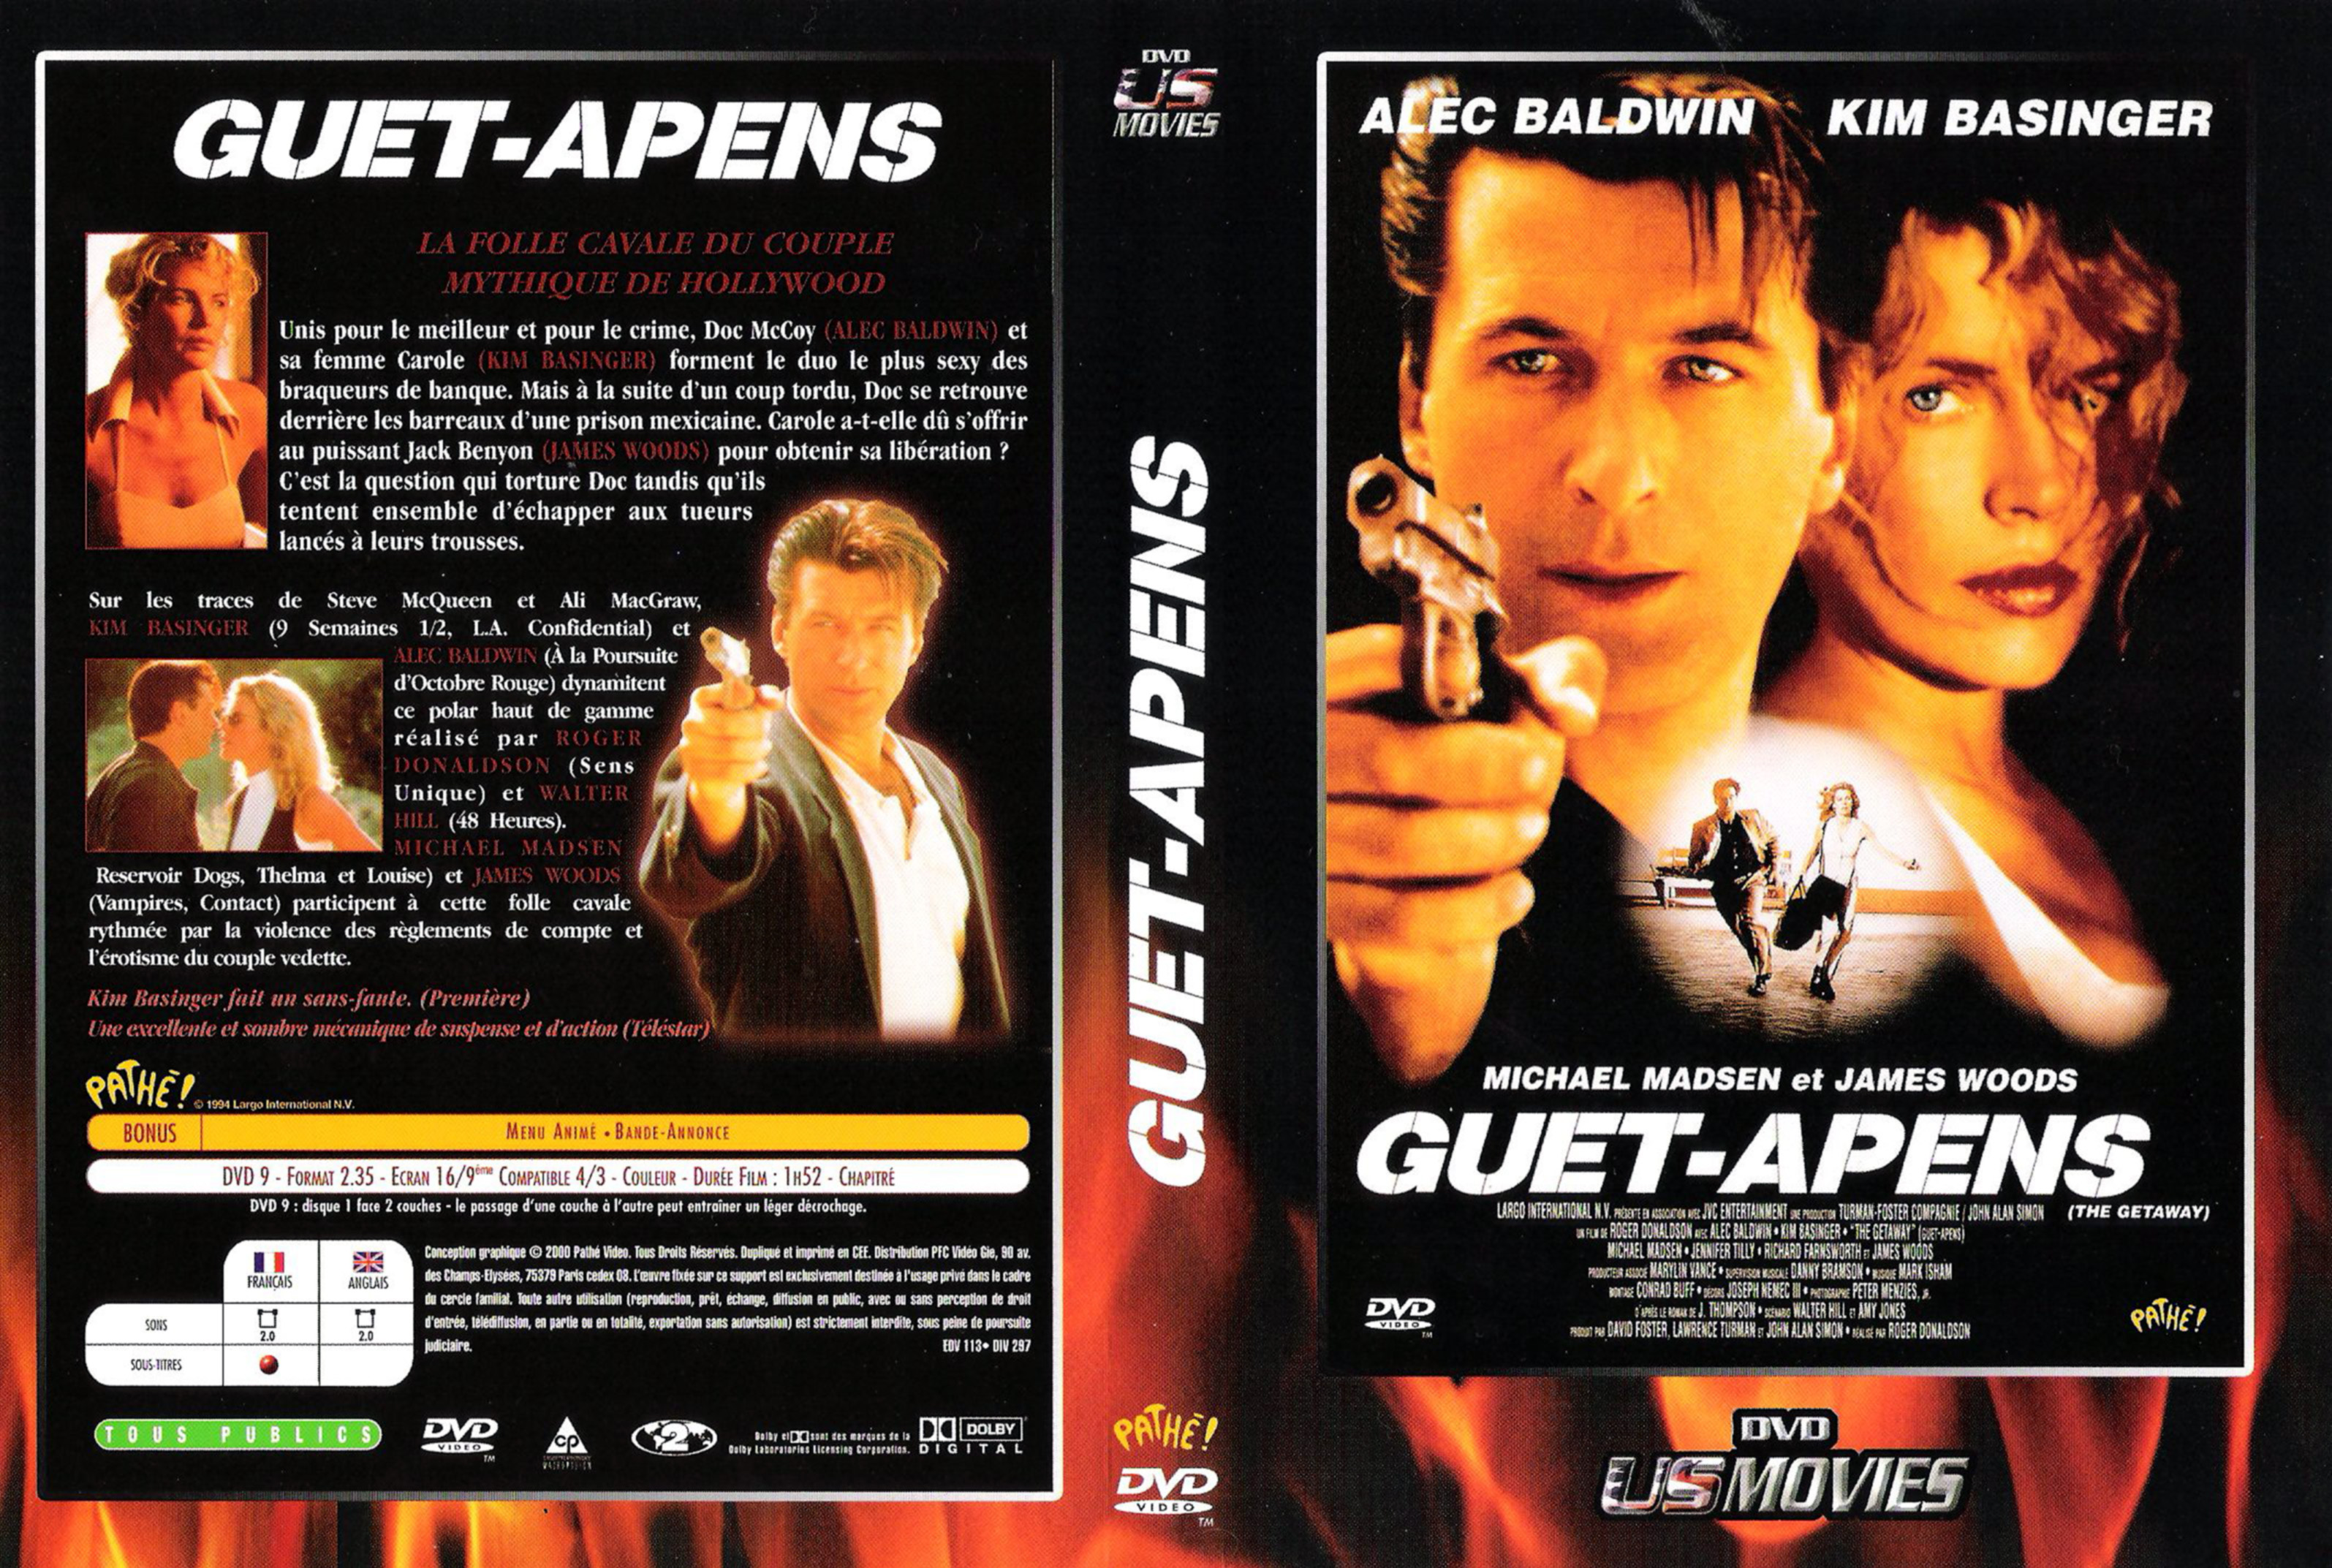 Jaquette DVD Guet-apens (1994) v2